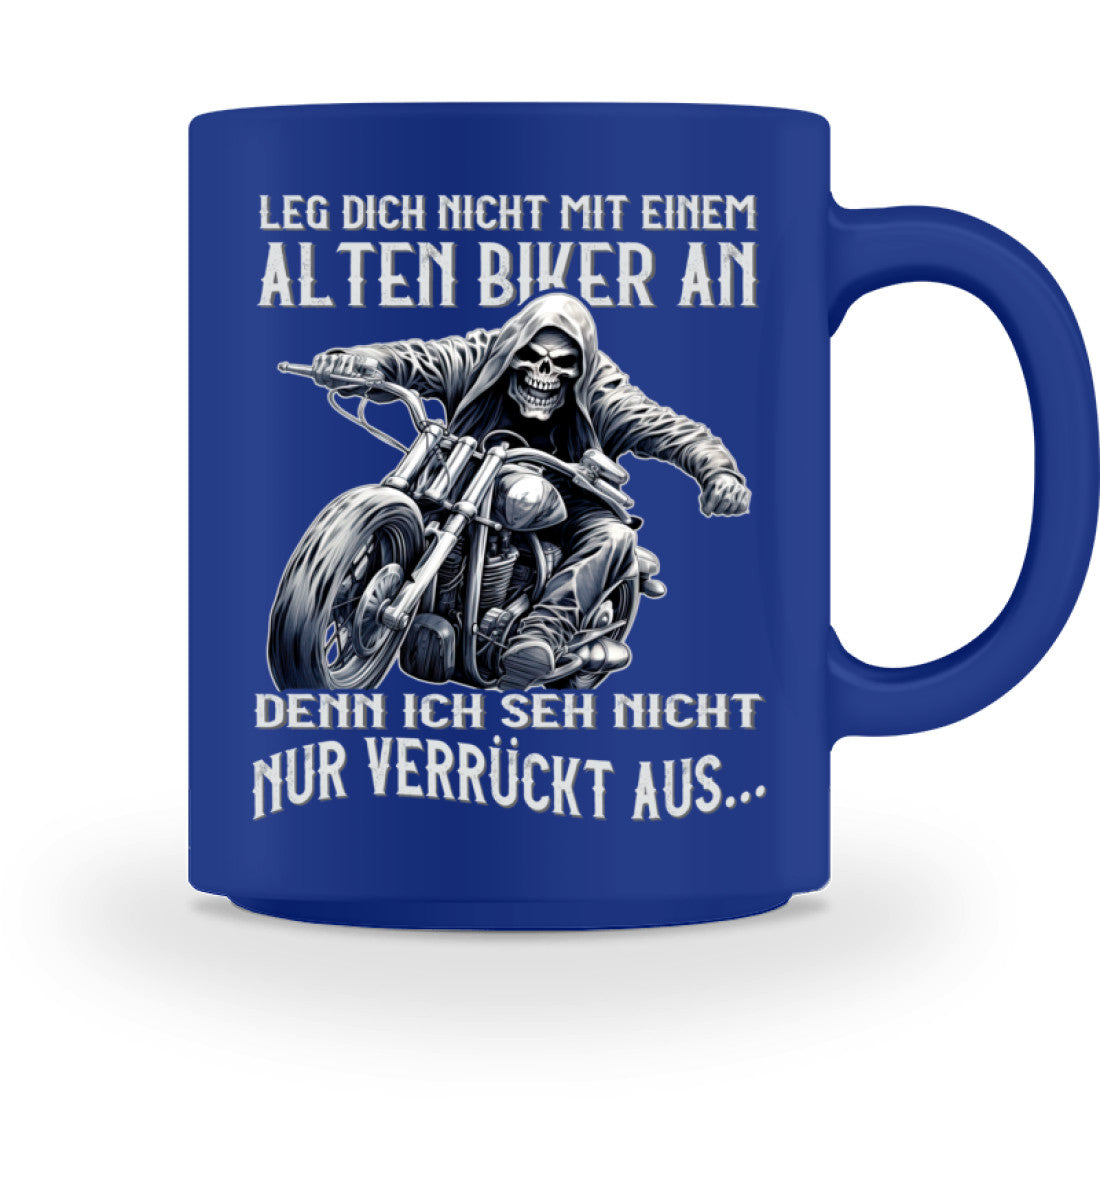 Eine Tasse für Motorradfahrer von Wingbikers, mit dem beidseitigen Aufdruck, Leg dich nicht mit einem alten Biker an, denn ich seh nicht nur verrückt aus, in royal blau.